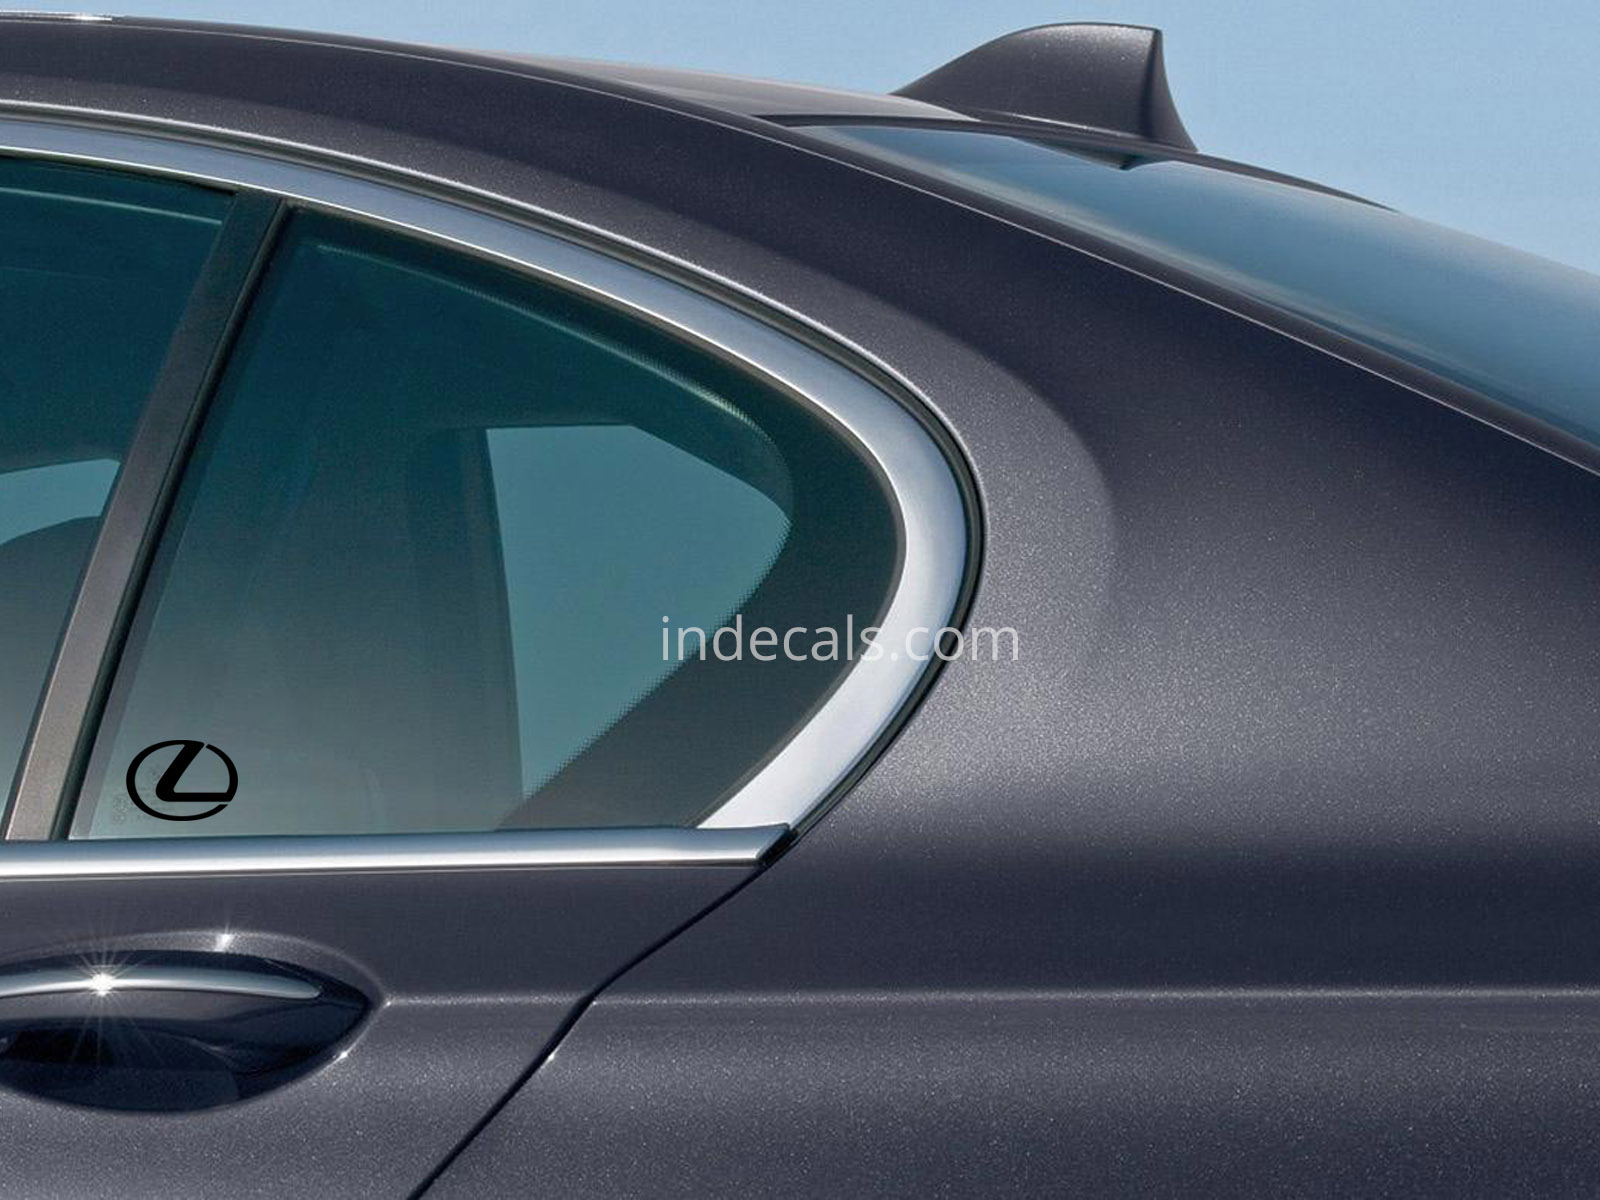 3 x Lexus Stickers for Rear Window - Black